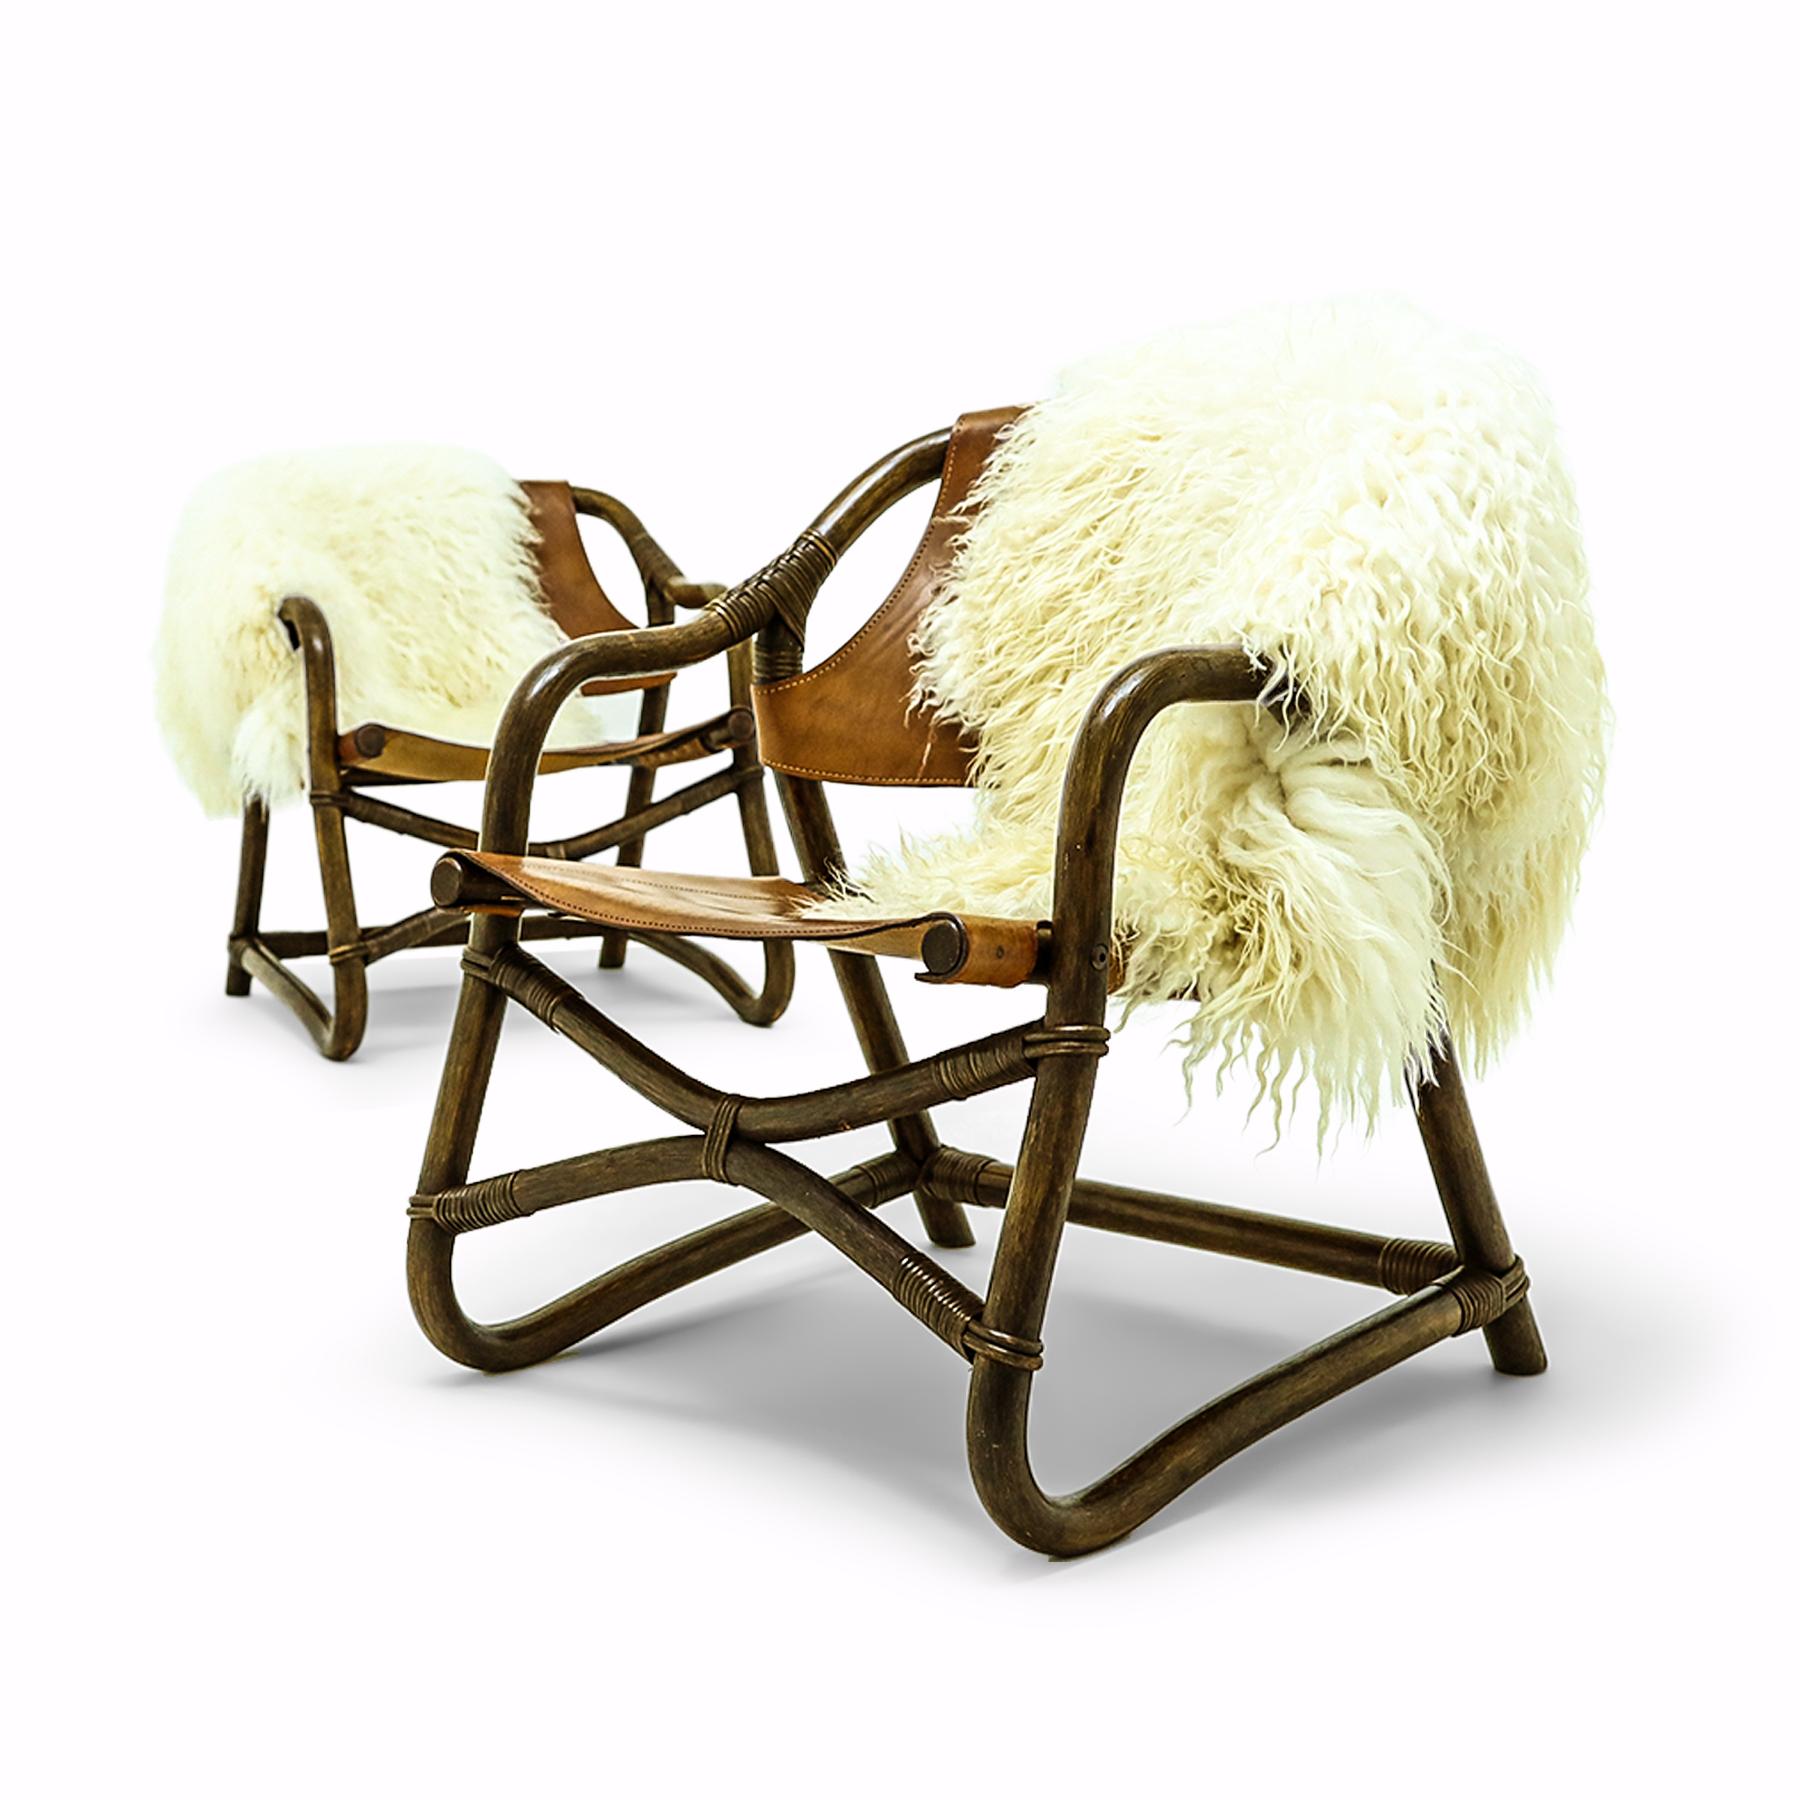 Bienvenue au Valhalla ! D'un style très nordique, cette paire de chaises est dotée d'une assise et d'un dossier en cuir épais, sur des supports en rotin liés, avec des jetés en peau de mouton islandais à poils longs - les deux jetés sont inclus dans